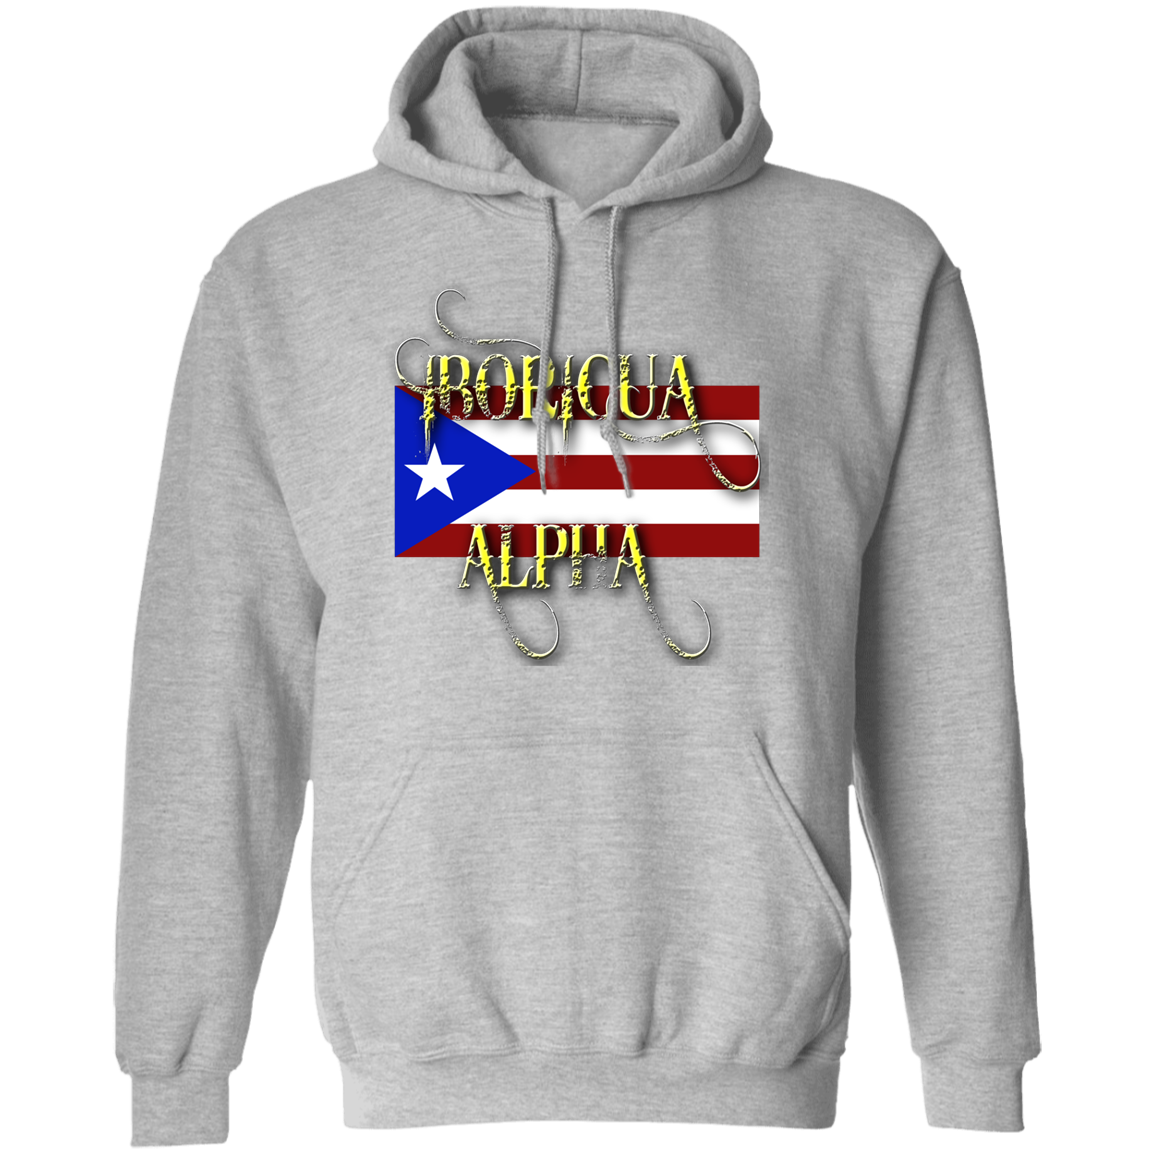 BORICUA ALPHA Hoodie 8 oz. - Puerto Rican Pride